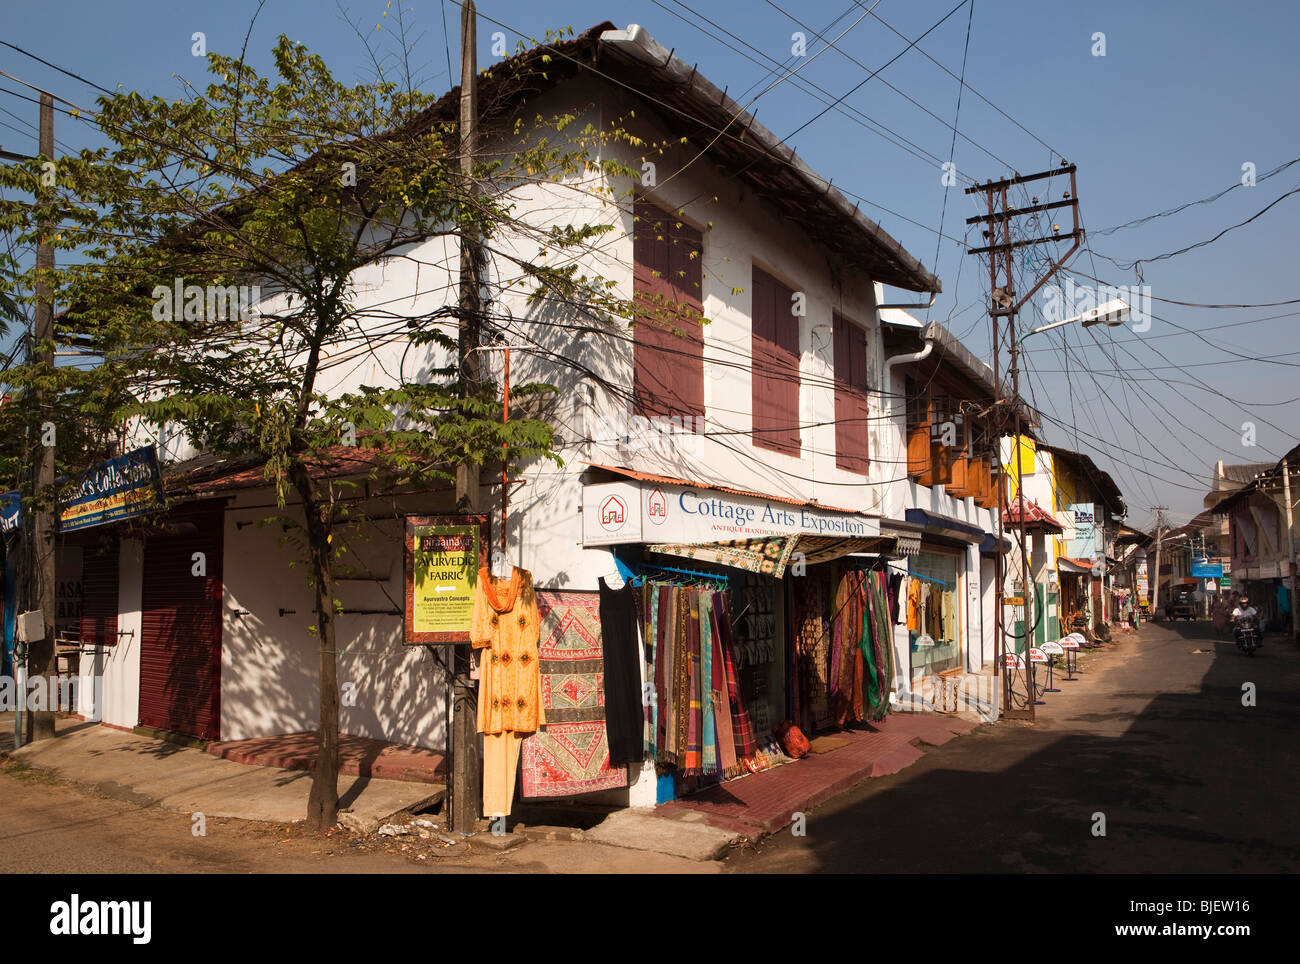 Indien, Kerala, Kochi, Mattancherry, Jewtown, Touristenläden in Straße entstellt durch elektrische Leitungen Stockfoto